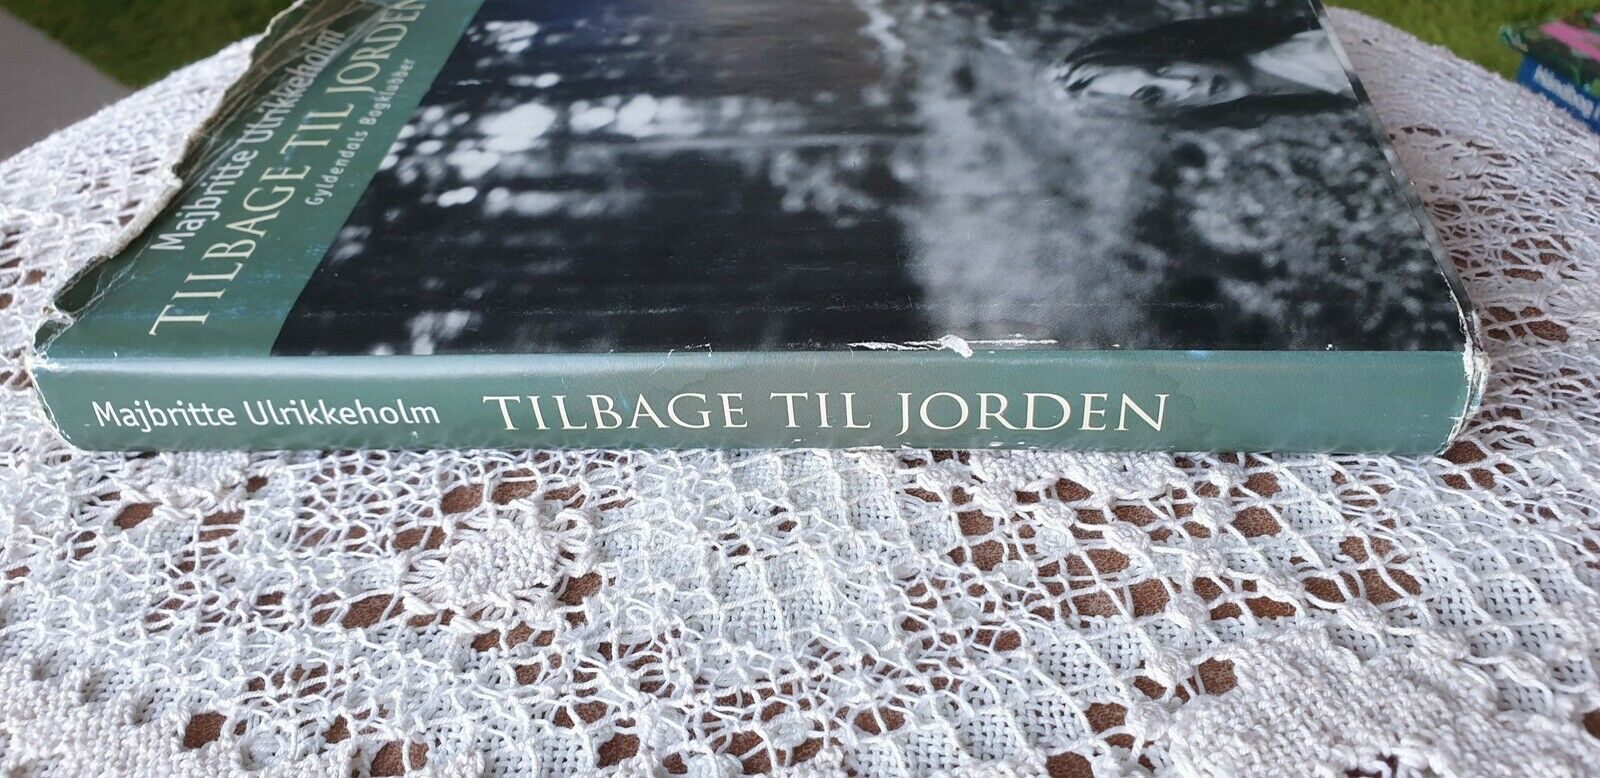 TILBAGE TIL JORDEN, MAJBRITTE ULRIKKEHOLM